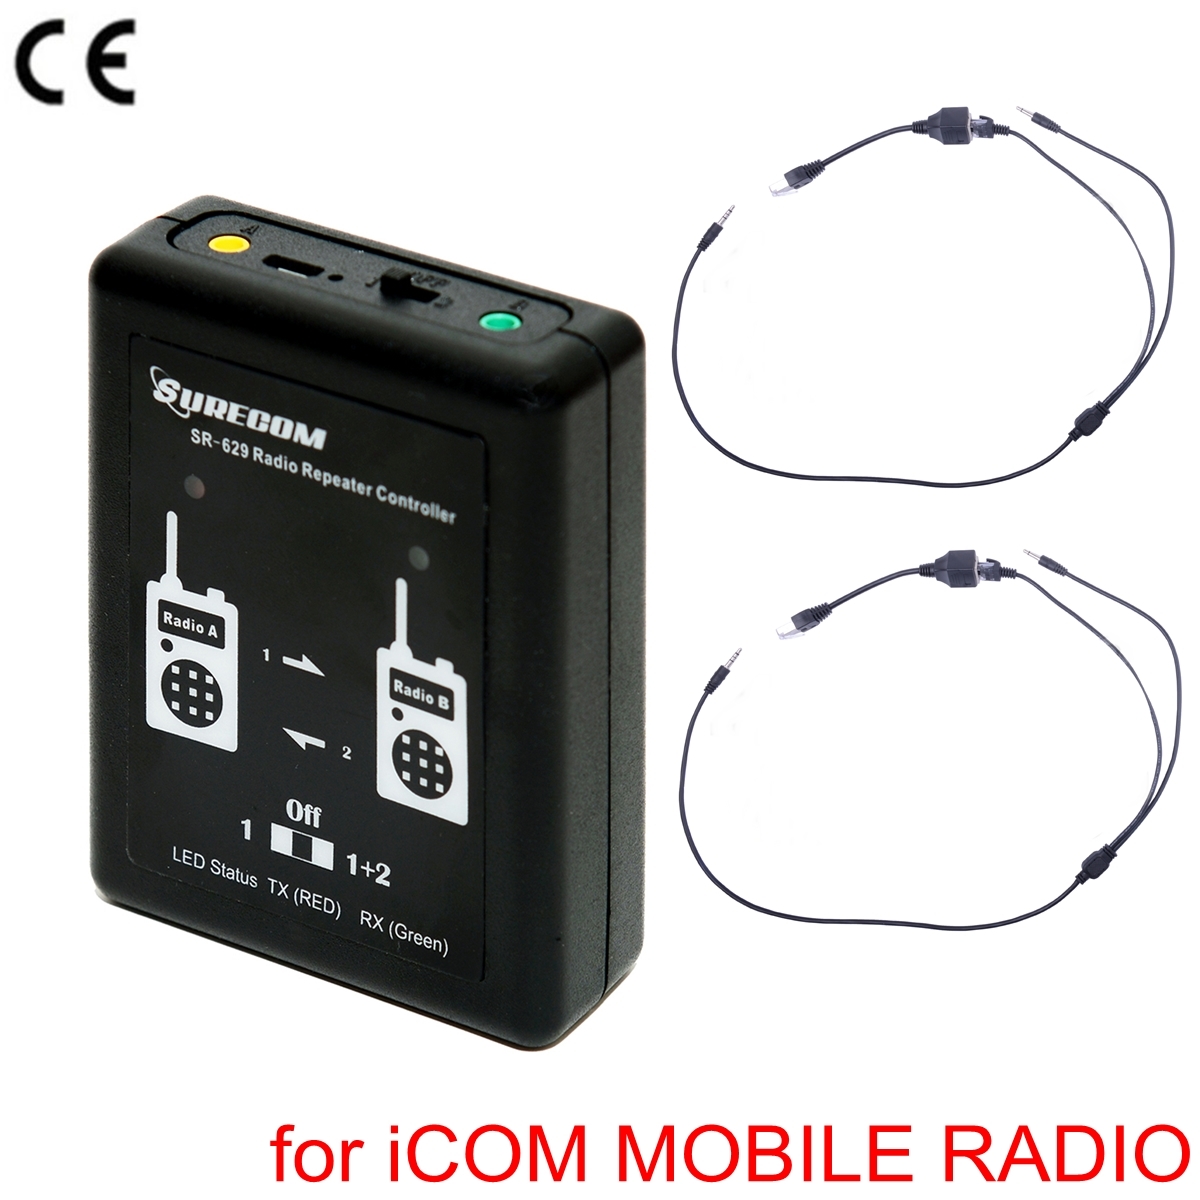 SURECOM SR-629 2 in 1 Duplex Repeater Controller For iCOM Car Radio